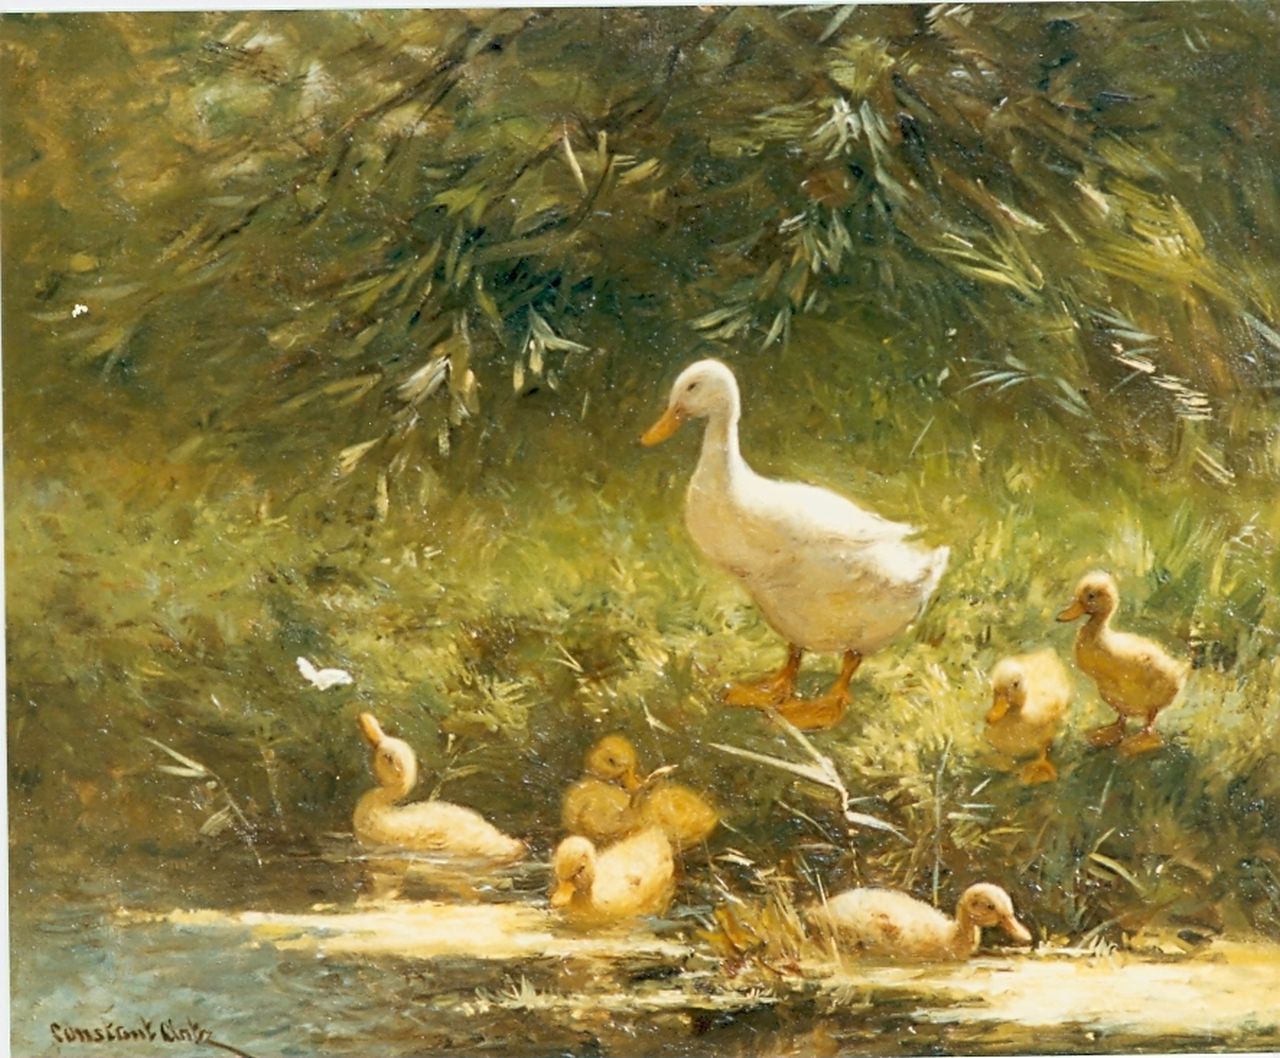 Artz C.D.L.  | 'Constant' David Ludovic Artz, Duck with ducklings, Öl auf Holz 40,0 x 50,0 cm, signed l.l.